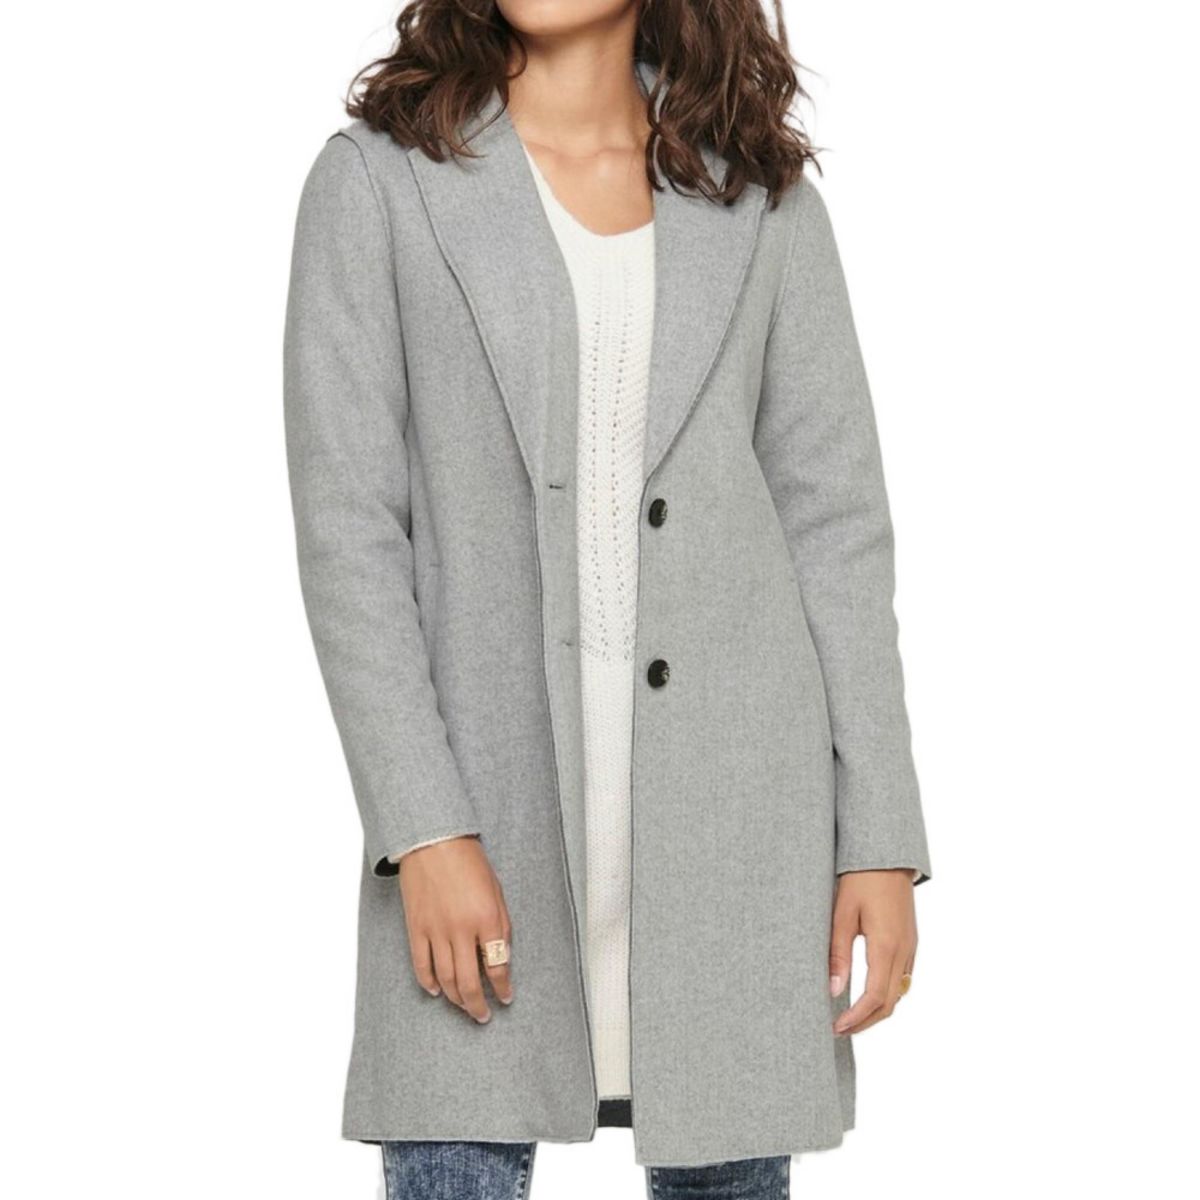 manteau gris femme pas cher